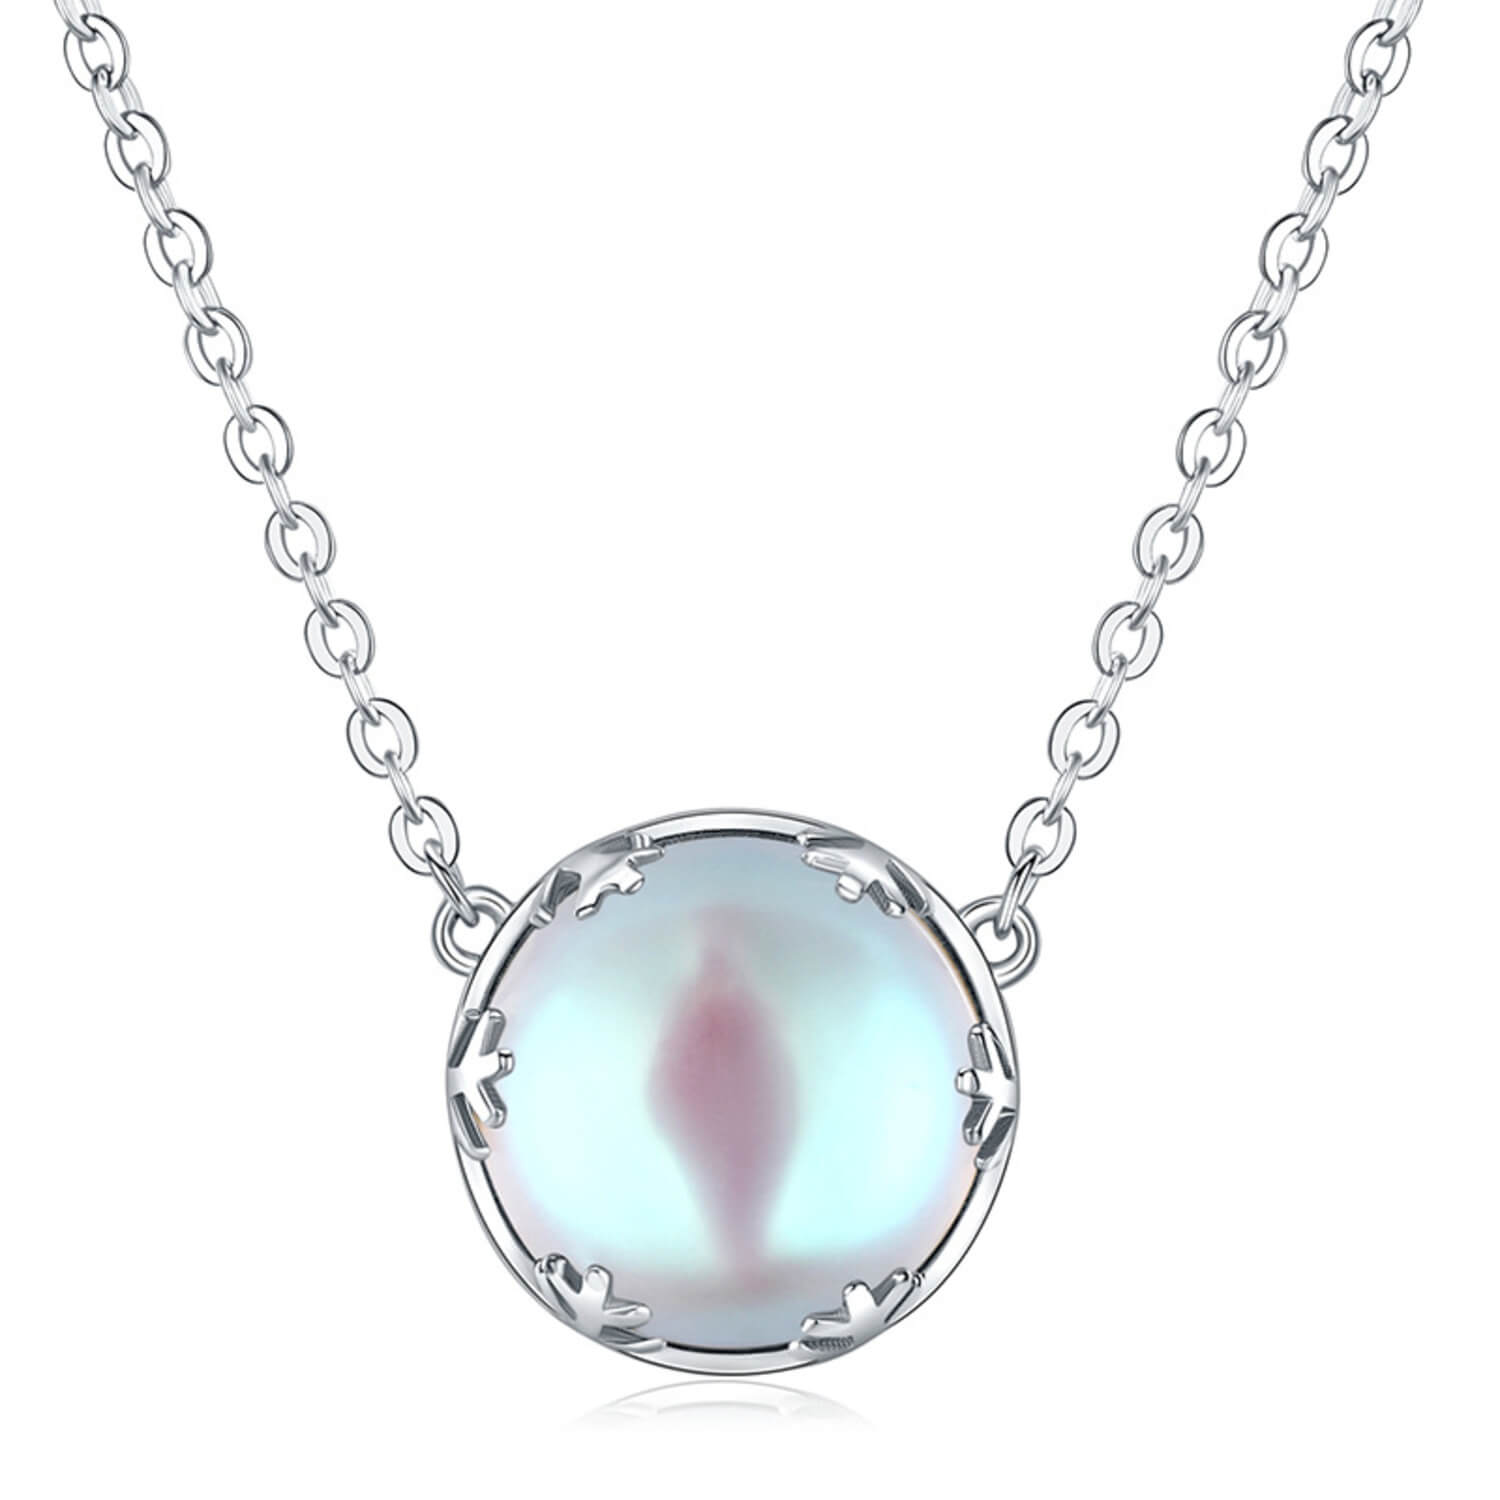 moonstone necklace uk